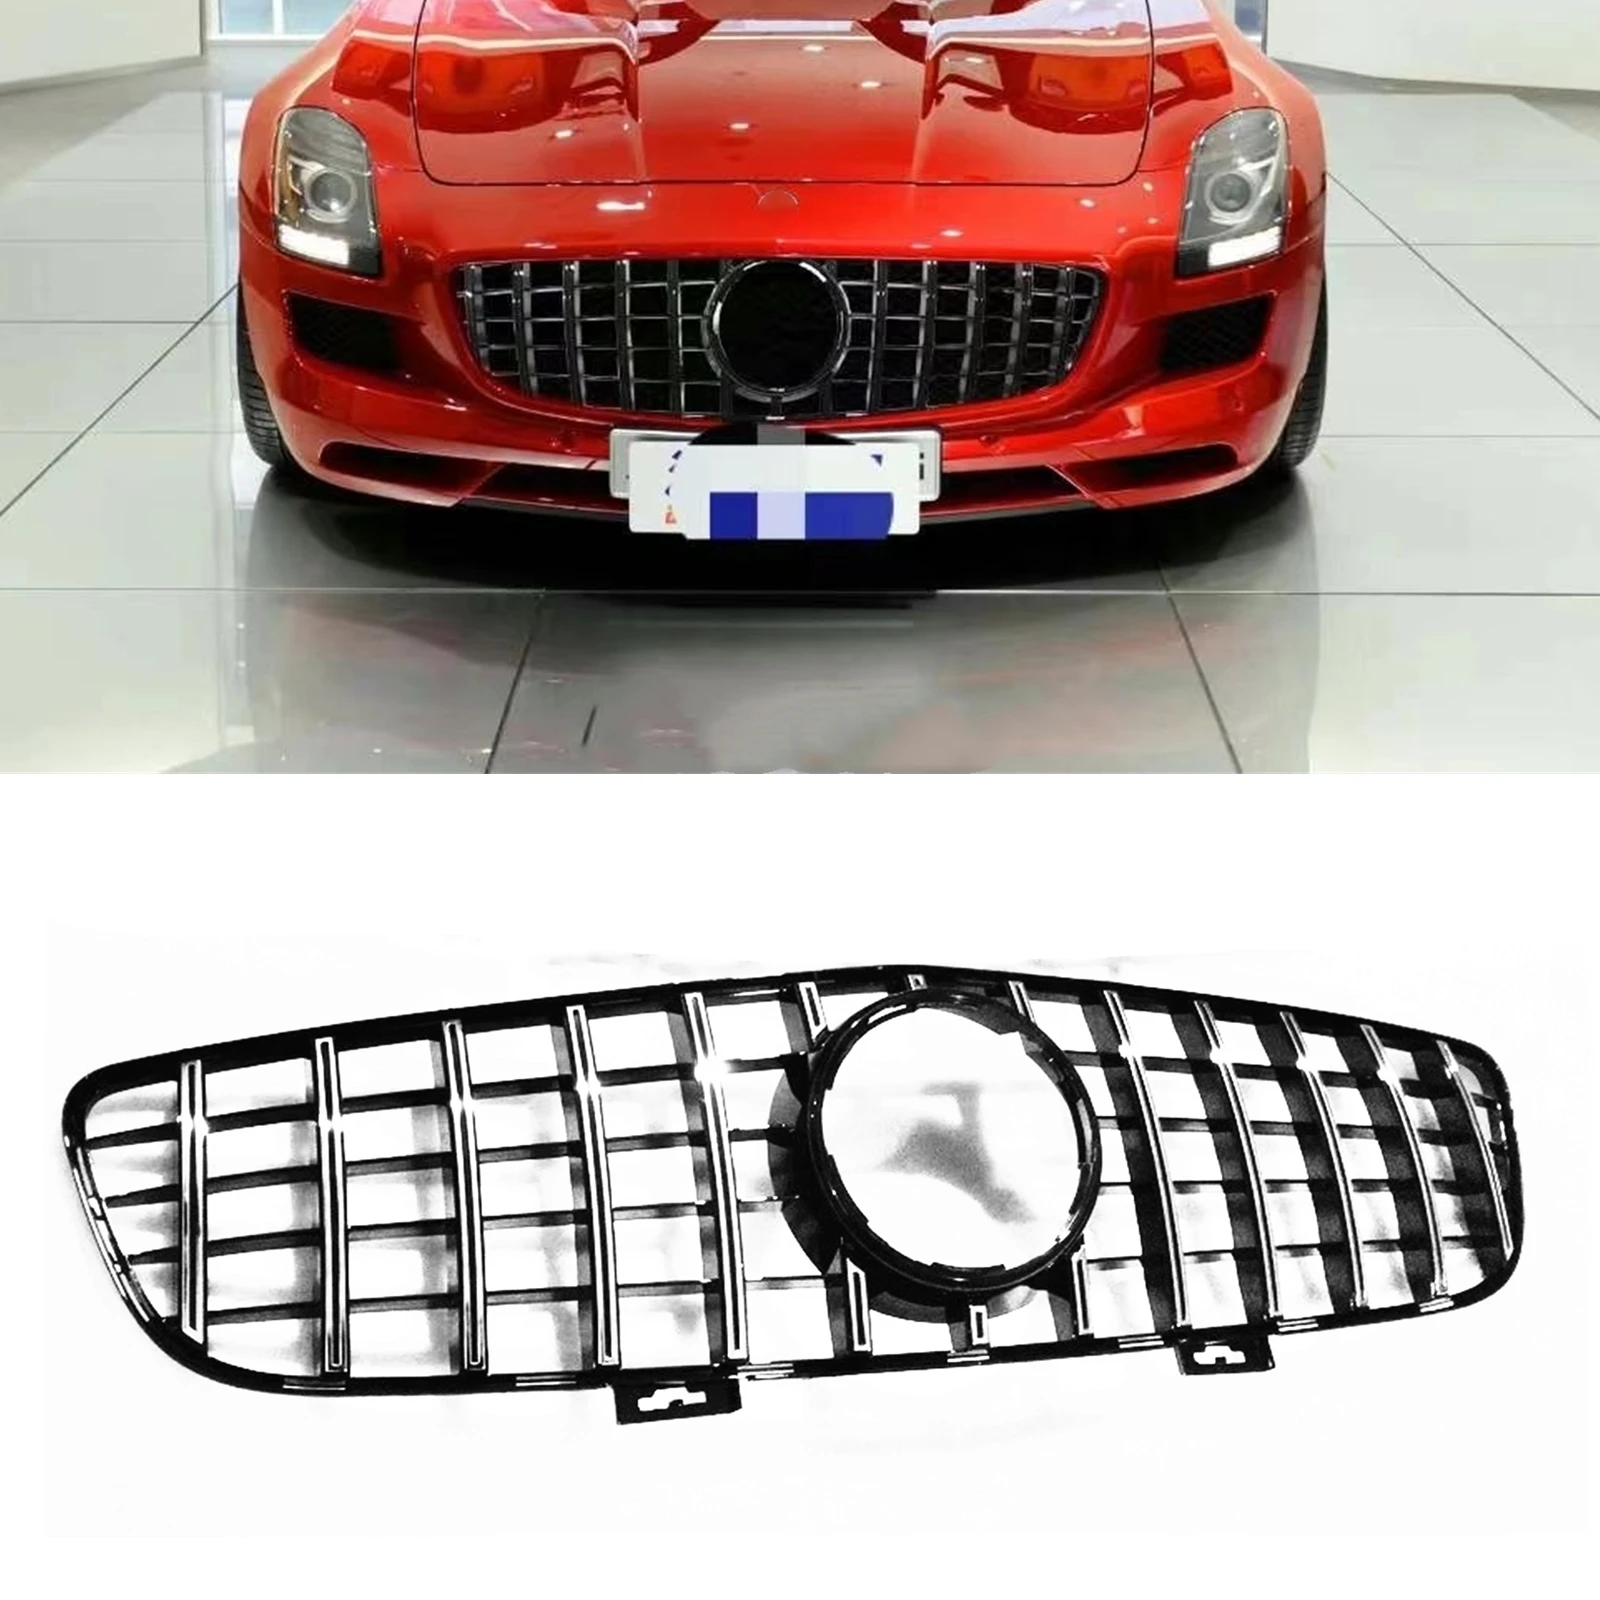 

Передняя решетка радиатора для Mercedes-Benz C197 SLS AMG 2010 2011 2012 2013 2014 2015 GT R, серебристая/черная верхняя бампер, стандартная сетка